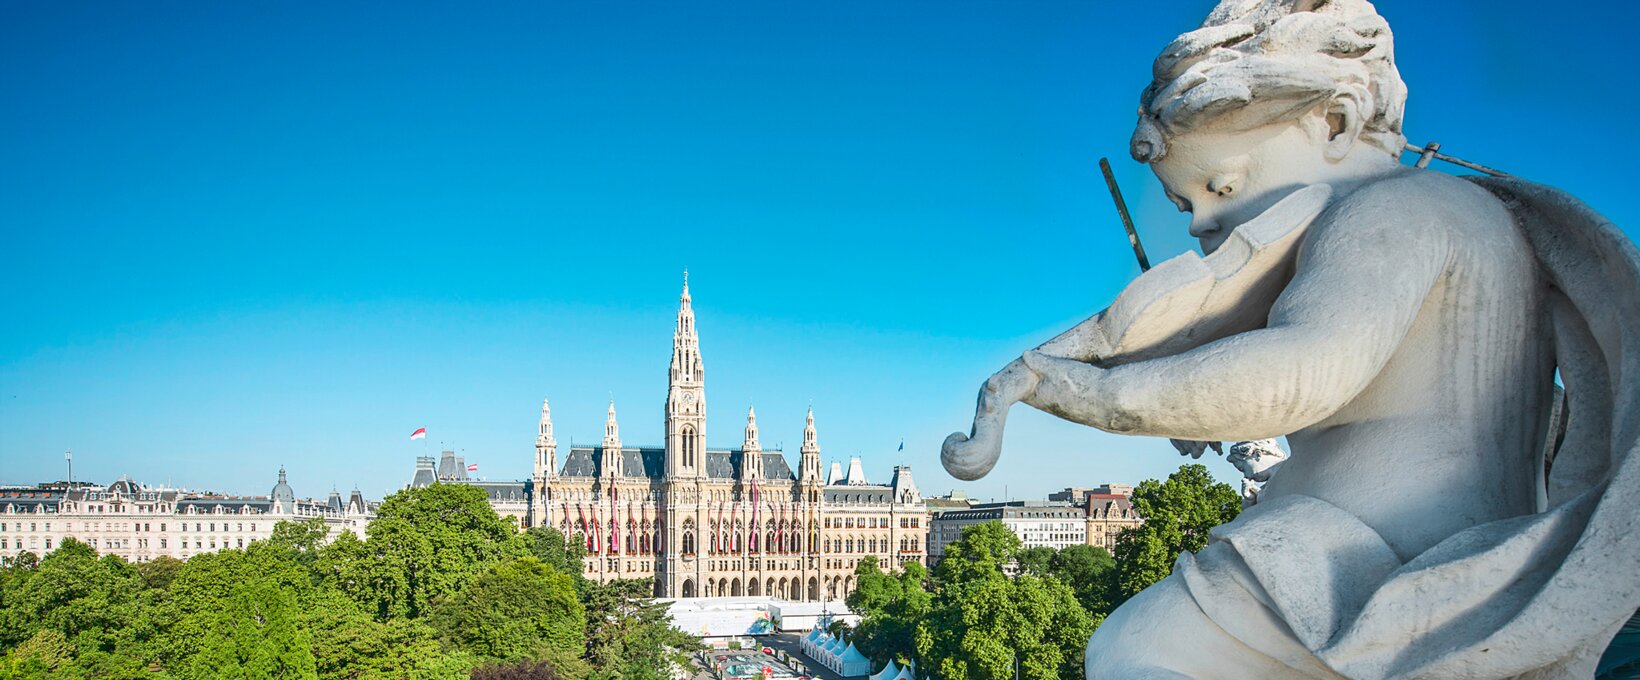 Panorama Rathaus mit Statue | Wien | © Wien Tourismus | Christian Stemper